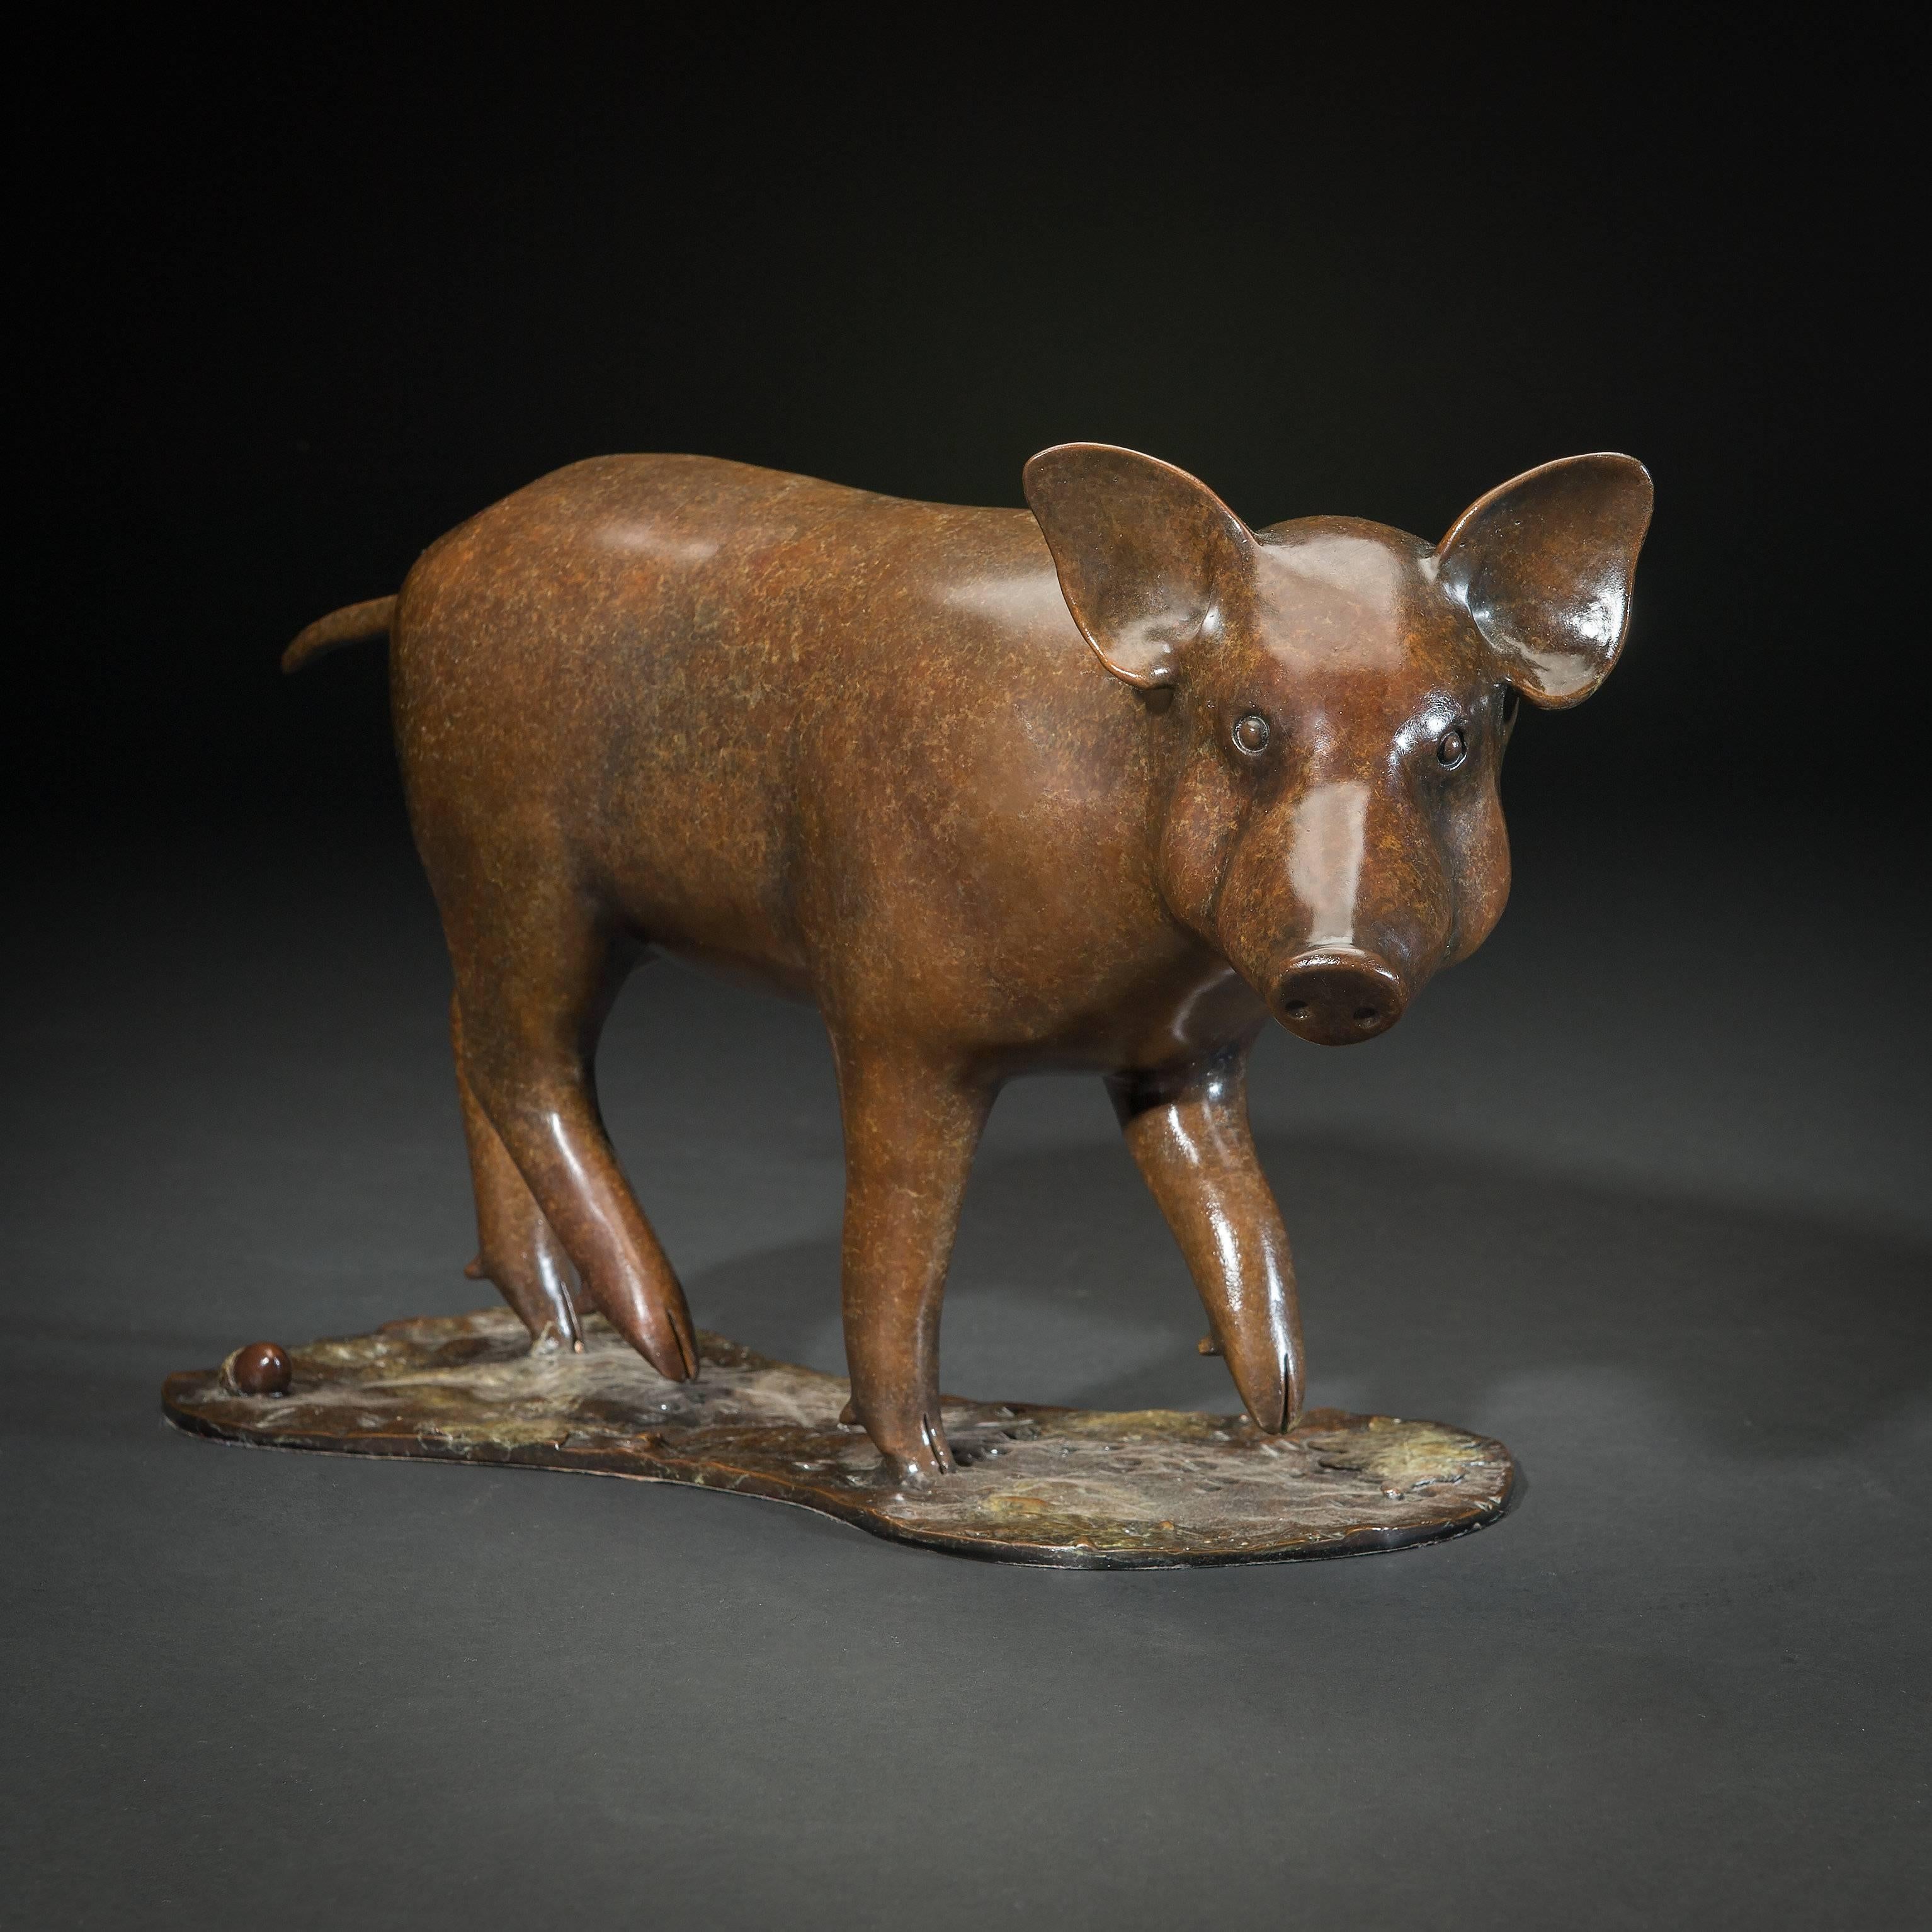 Figurative Sculpture Richard Smith b.1955 - Sculpture contemporaine de faune en bronze massif « Wild Boar » représentant un porc dans la forêt